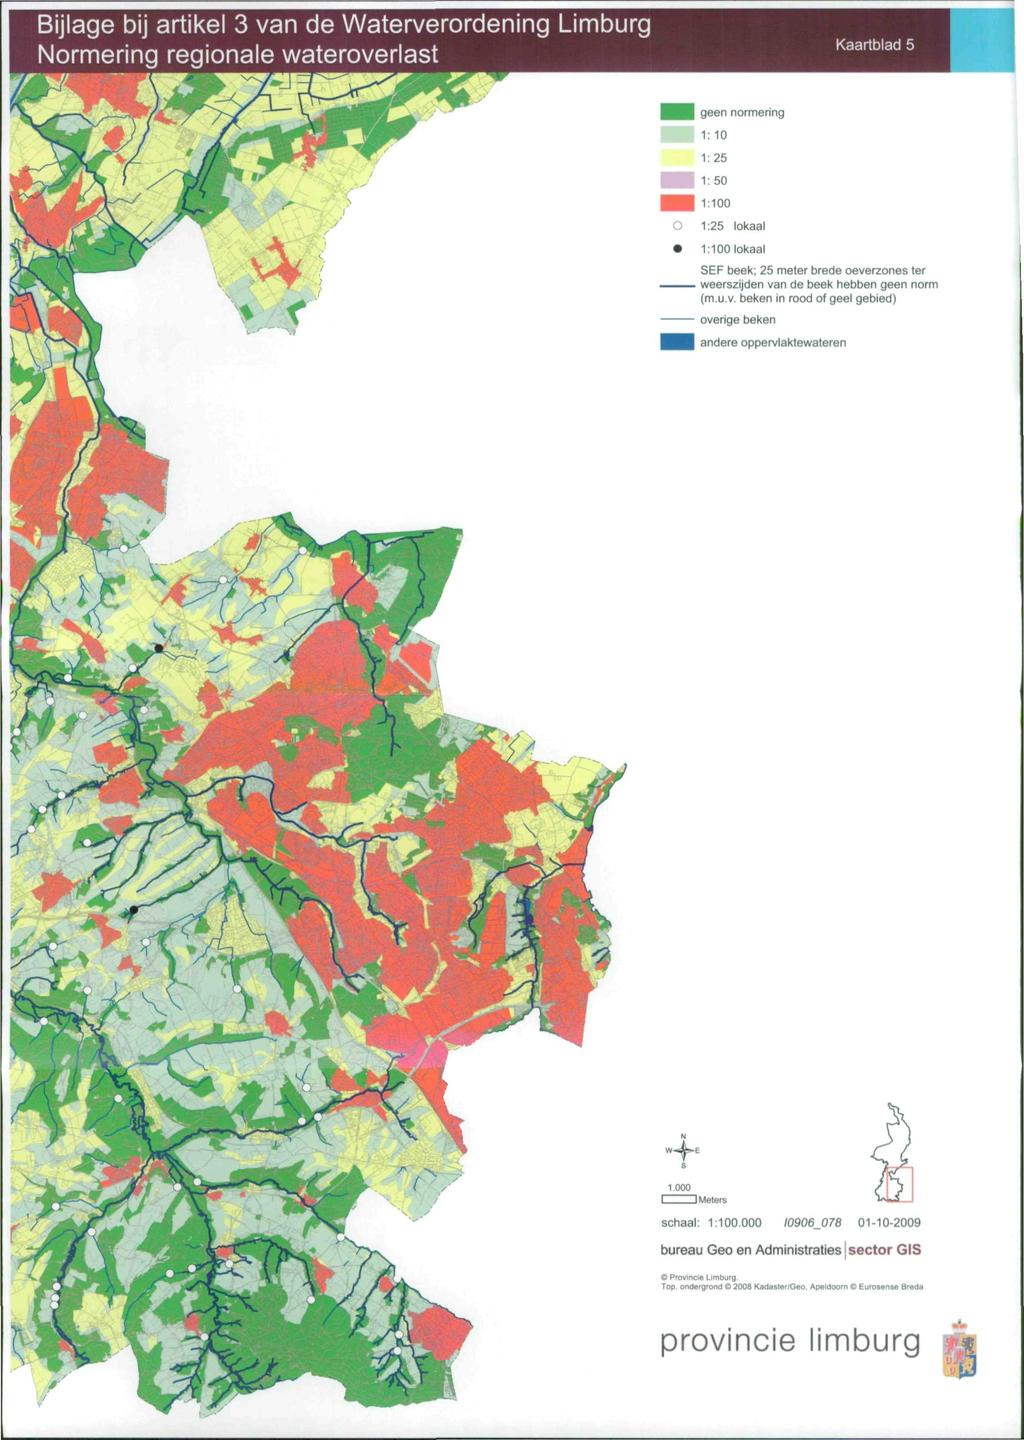 Bijlage bij artikel 3 van de Waterverordening Limburg ormering regionale wateroverlast Kaartblad 5 geen normering 1:10 1:25 1:50 1:100 1:25 lokaal 1:100 lokaal SEF beek; 25 meter brede oeverzones ter